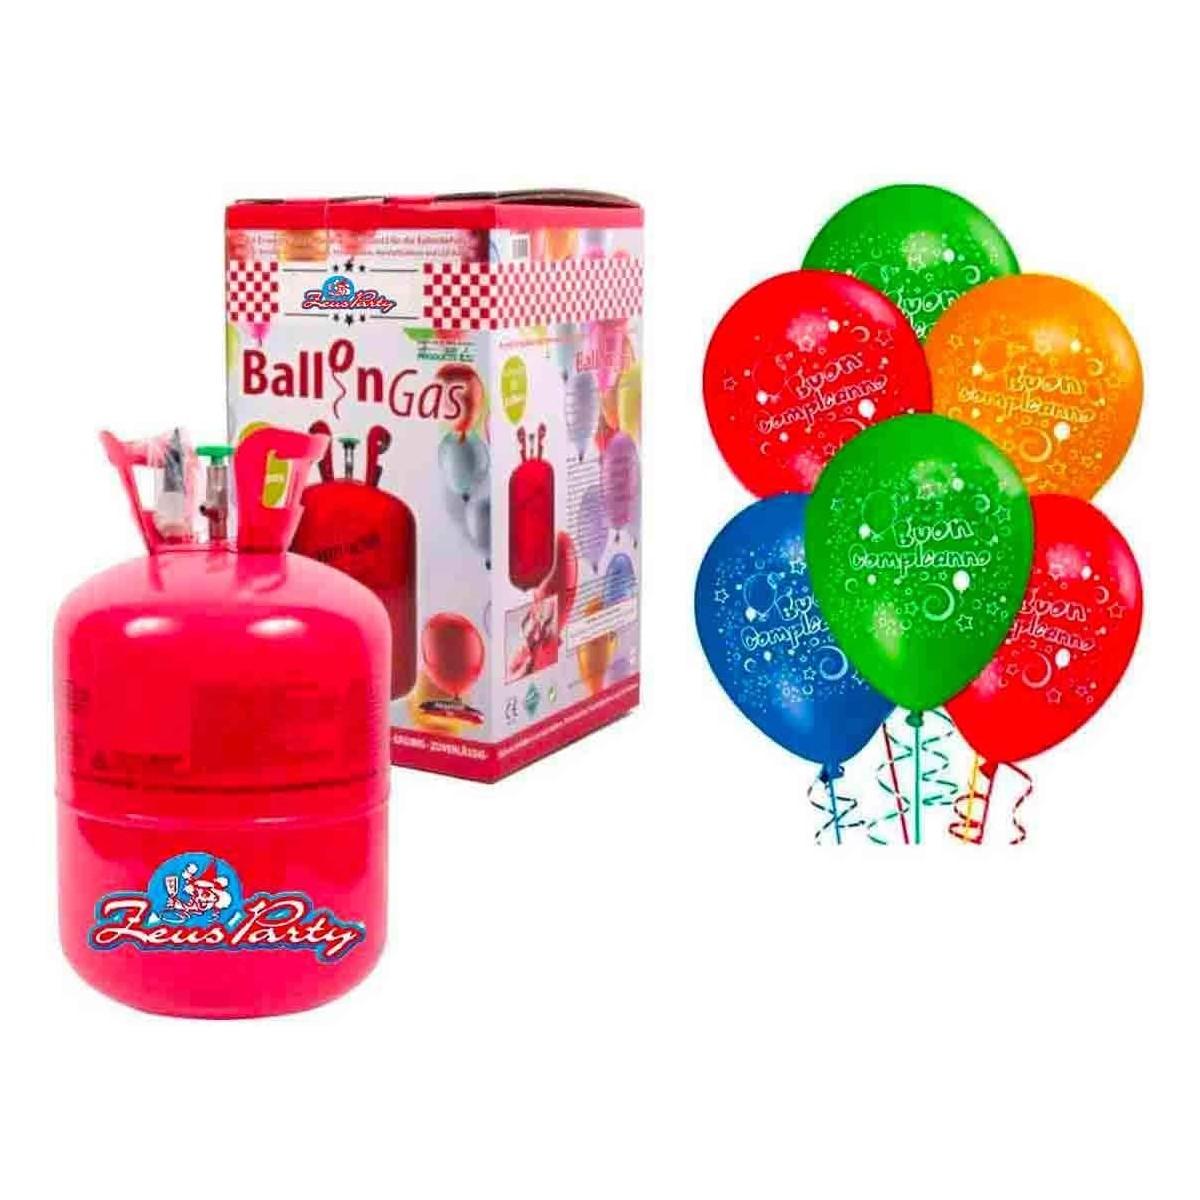 Bombola gas elio da 6,9 lt per 50 palloncini, con omaggio palloncini